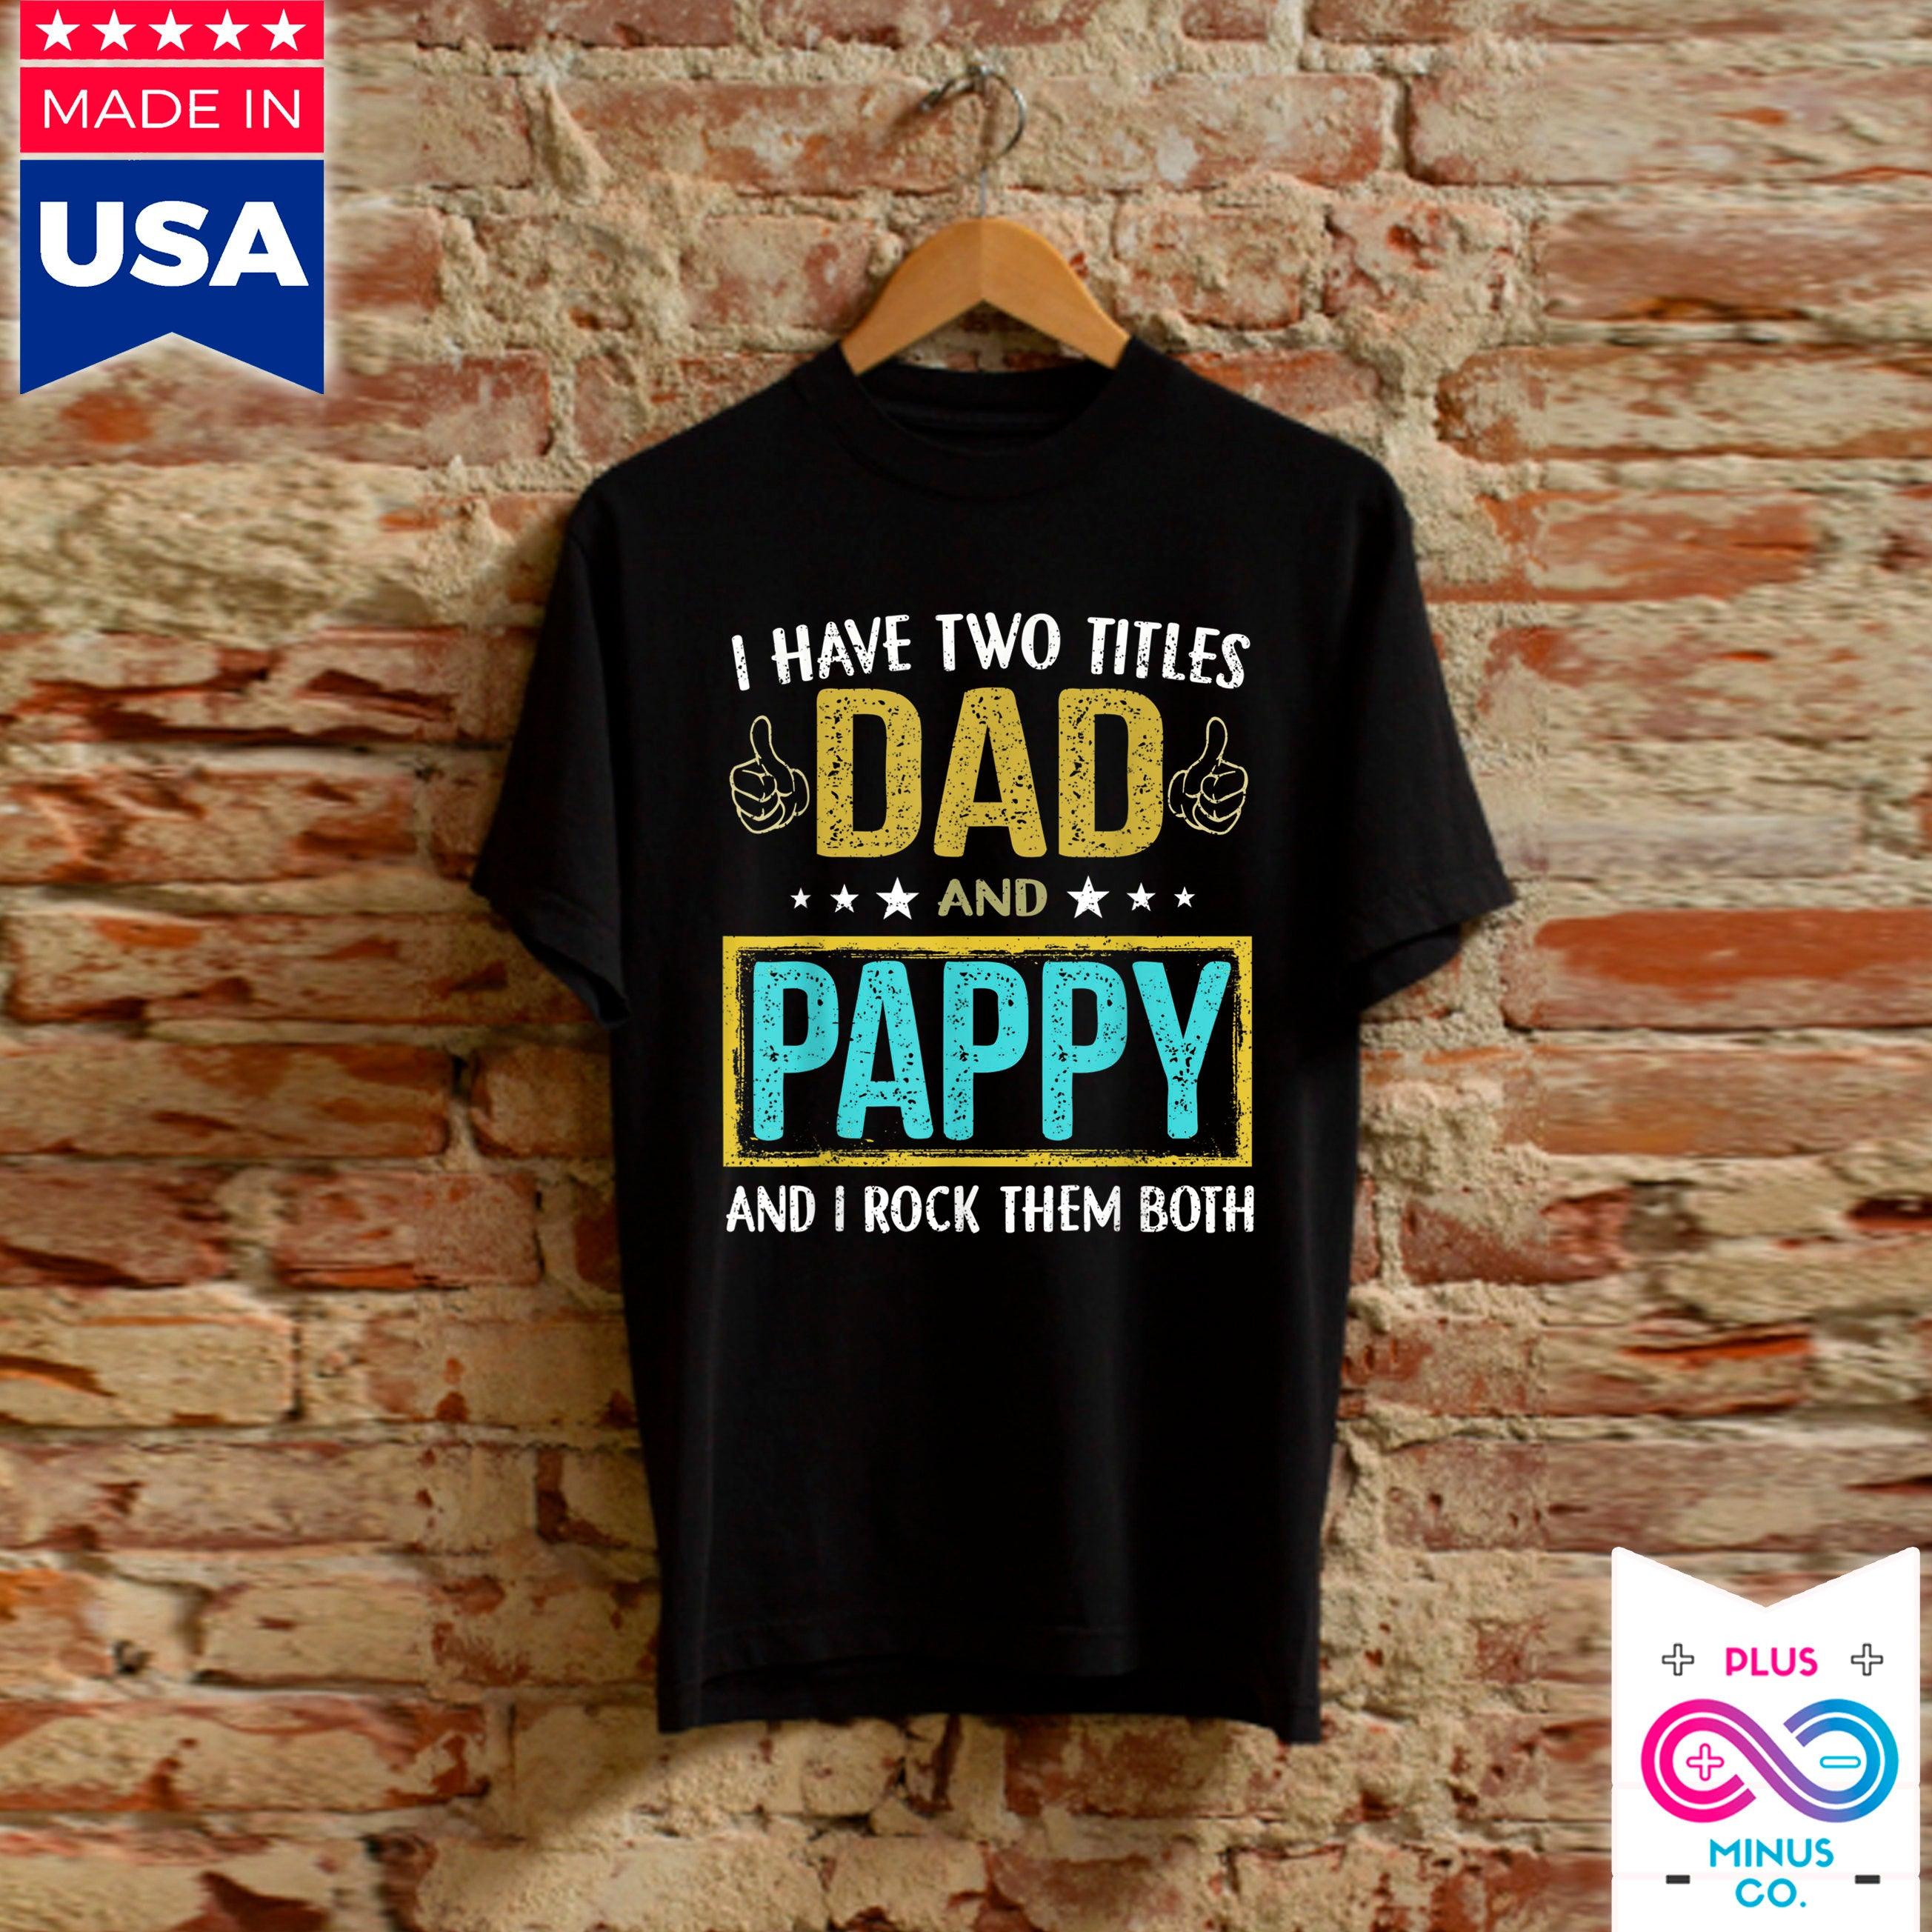 Férfiak Két címem van: Apa és Pappy – Ajándékok apának, pólók, ajándékok lányától apának, apák napi ajándékok, ajándékok fiamtól apának – plusminusco.com